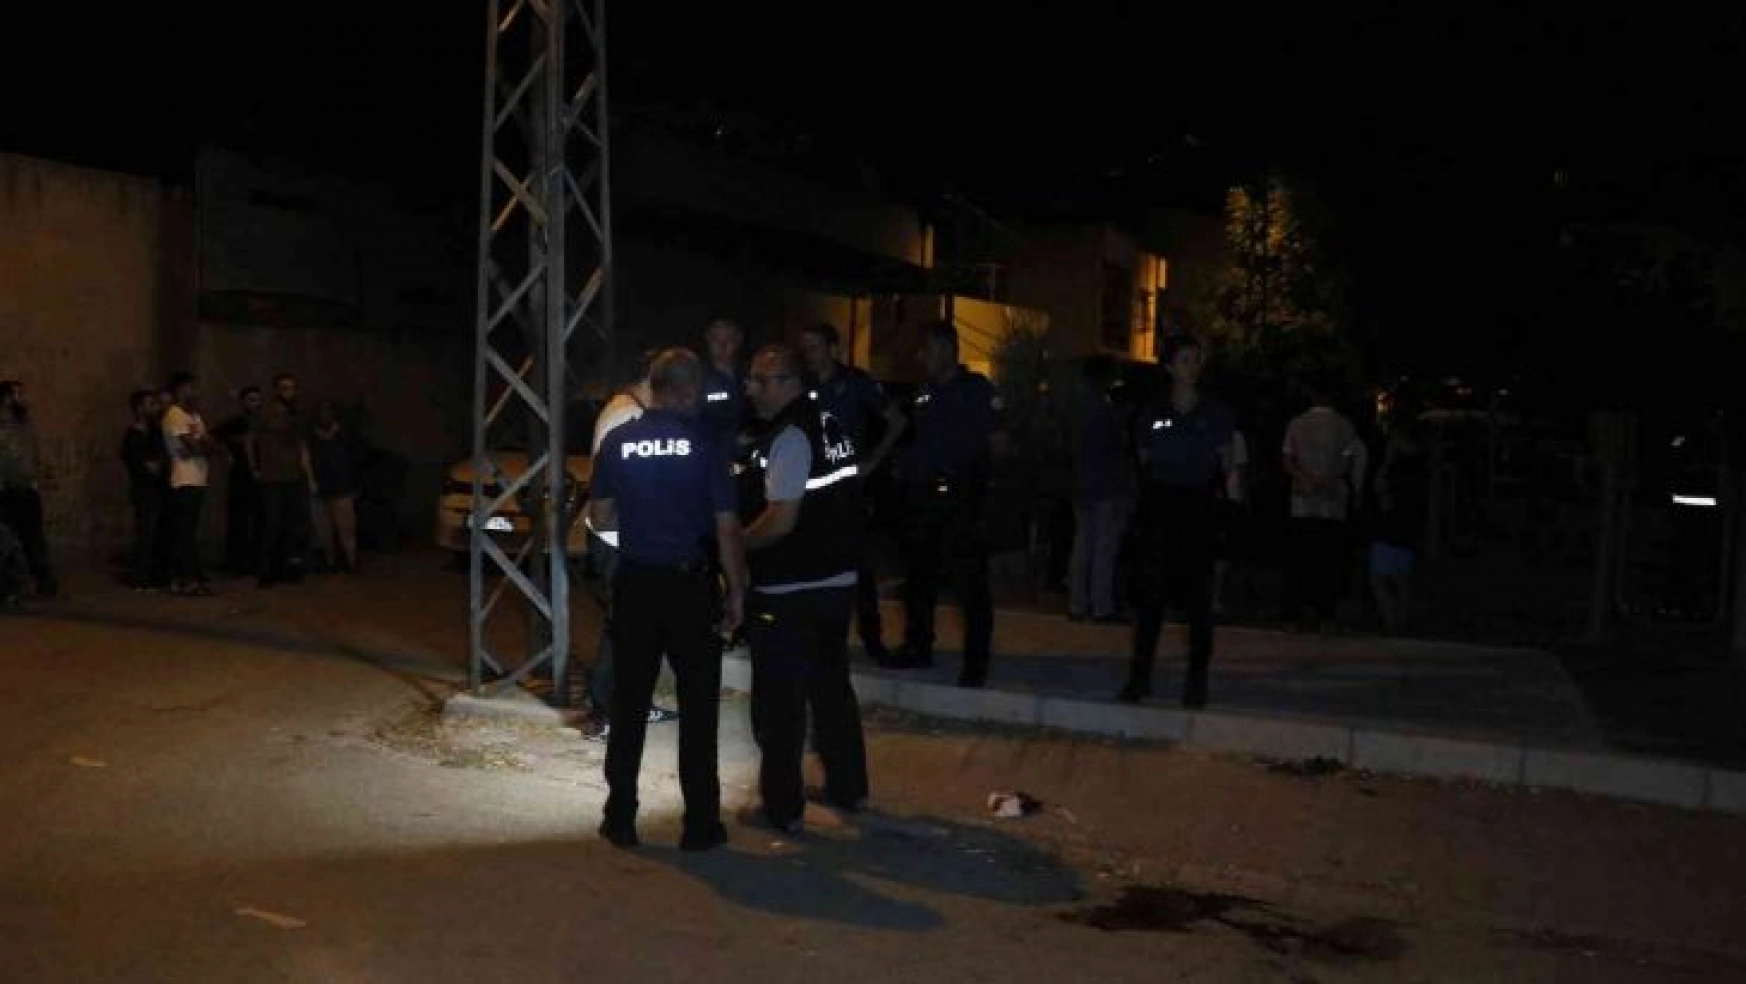 Adana'da selam verme bahanesiyle yaklaştı, 2 kişiyi vurdu